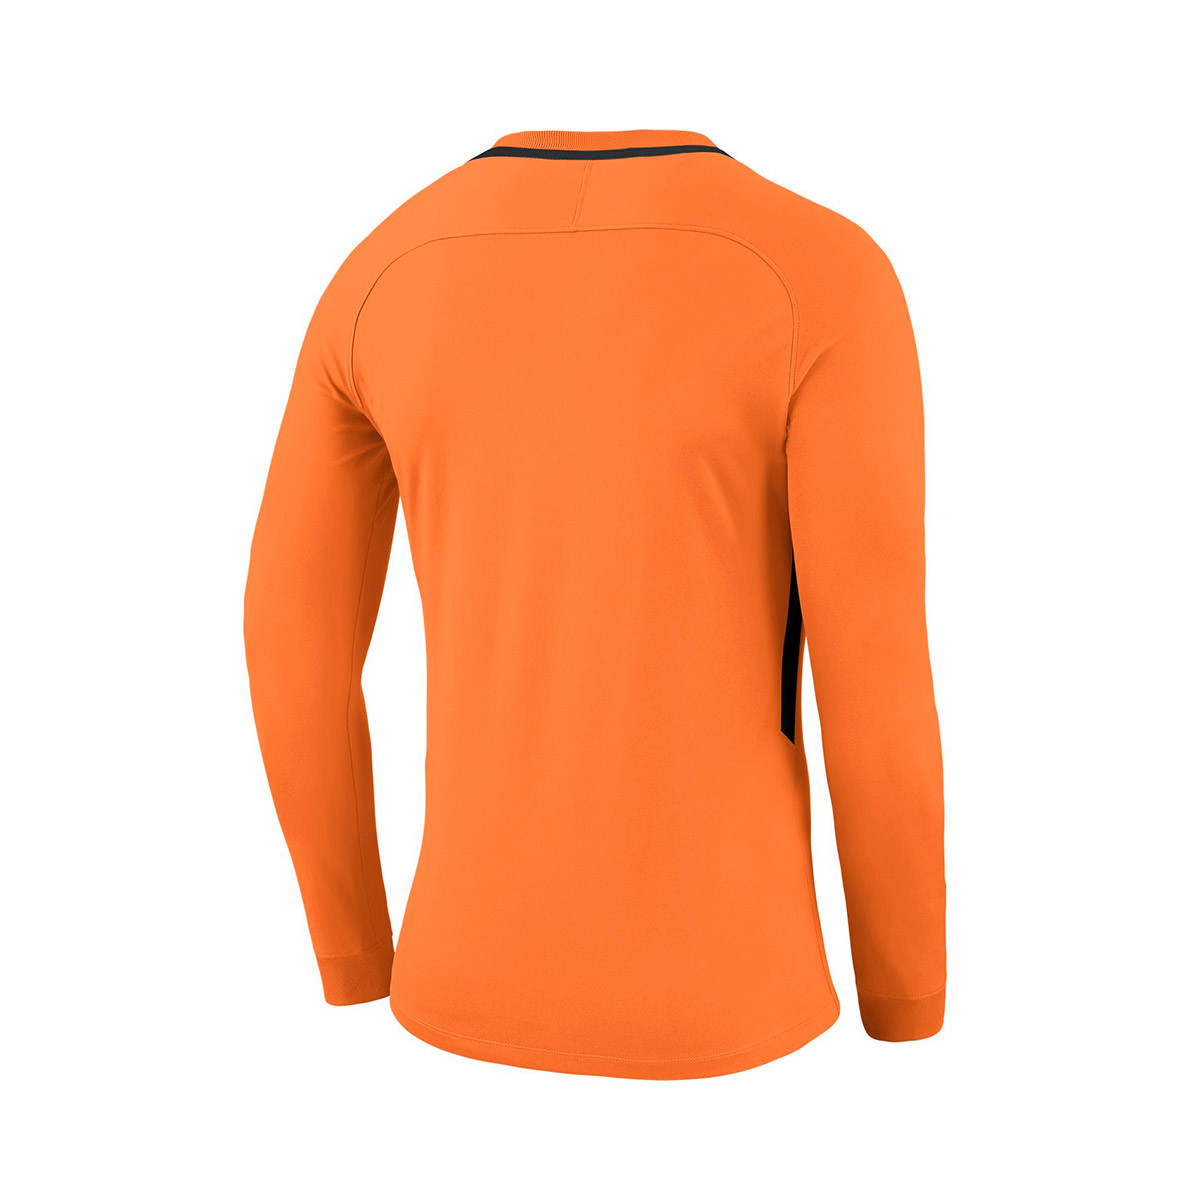 nike total orange shirt